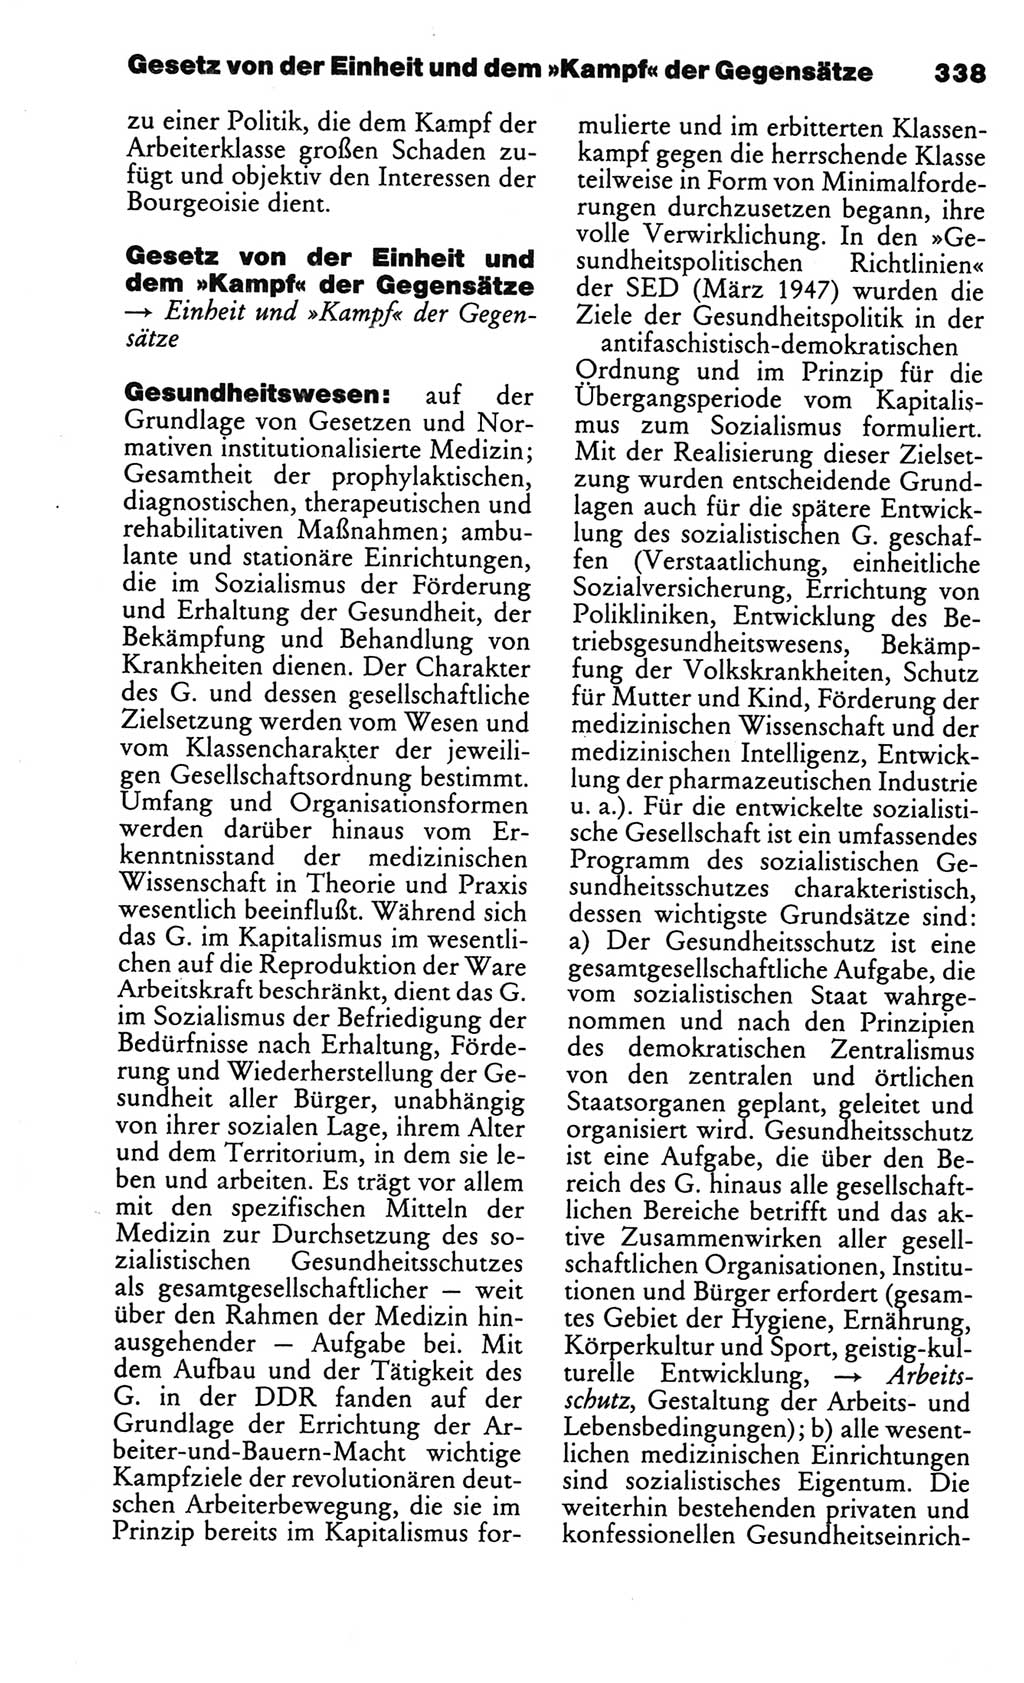 Kleines politisches Wörterbuch [Deutsche Demokratische Republik (DDR)] 1986, Seite 338 (Kl. pol. Wb. DDR 1986, S. 338)